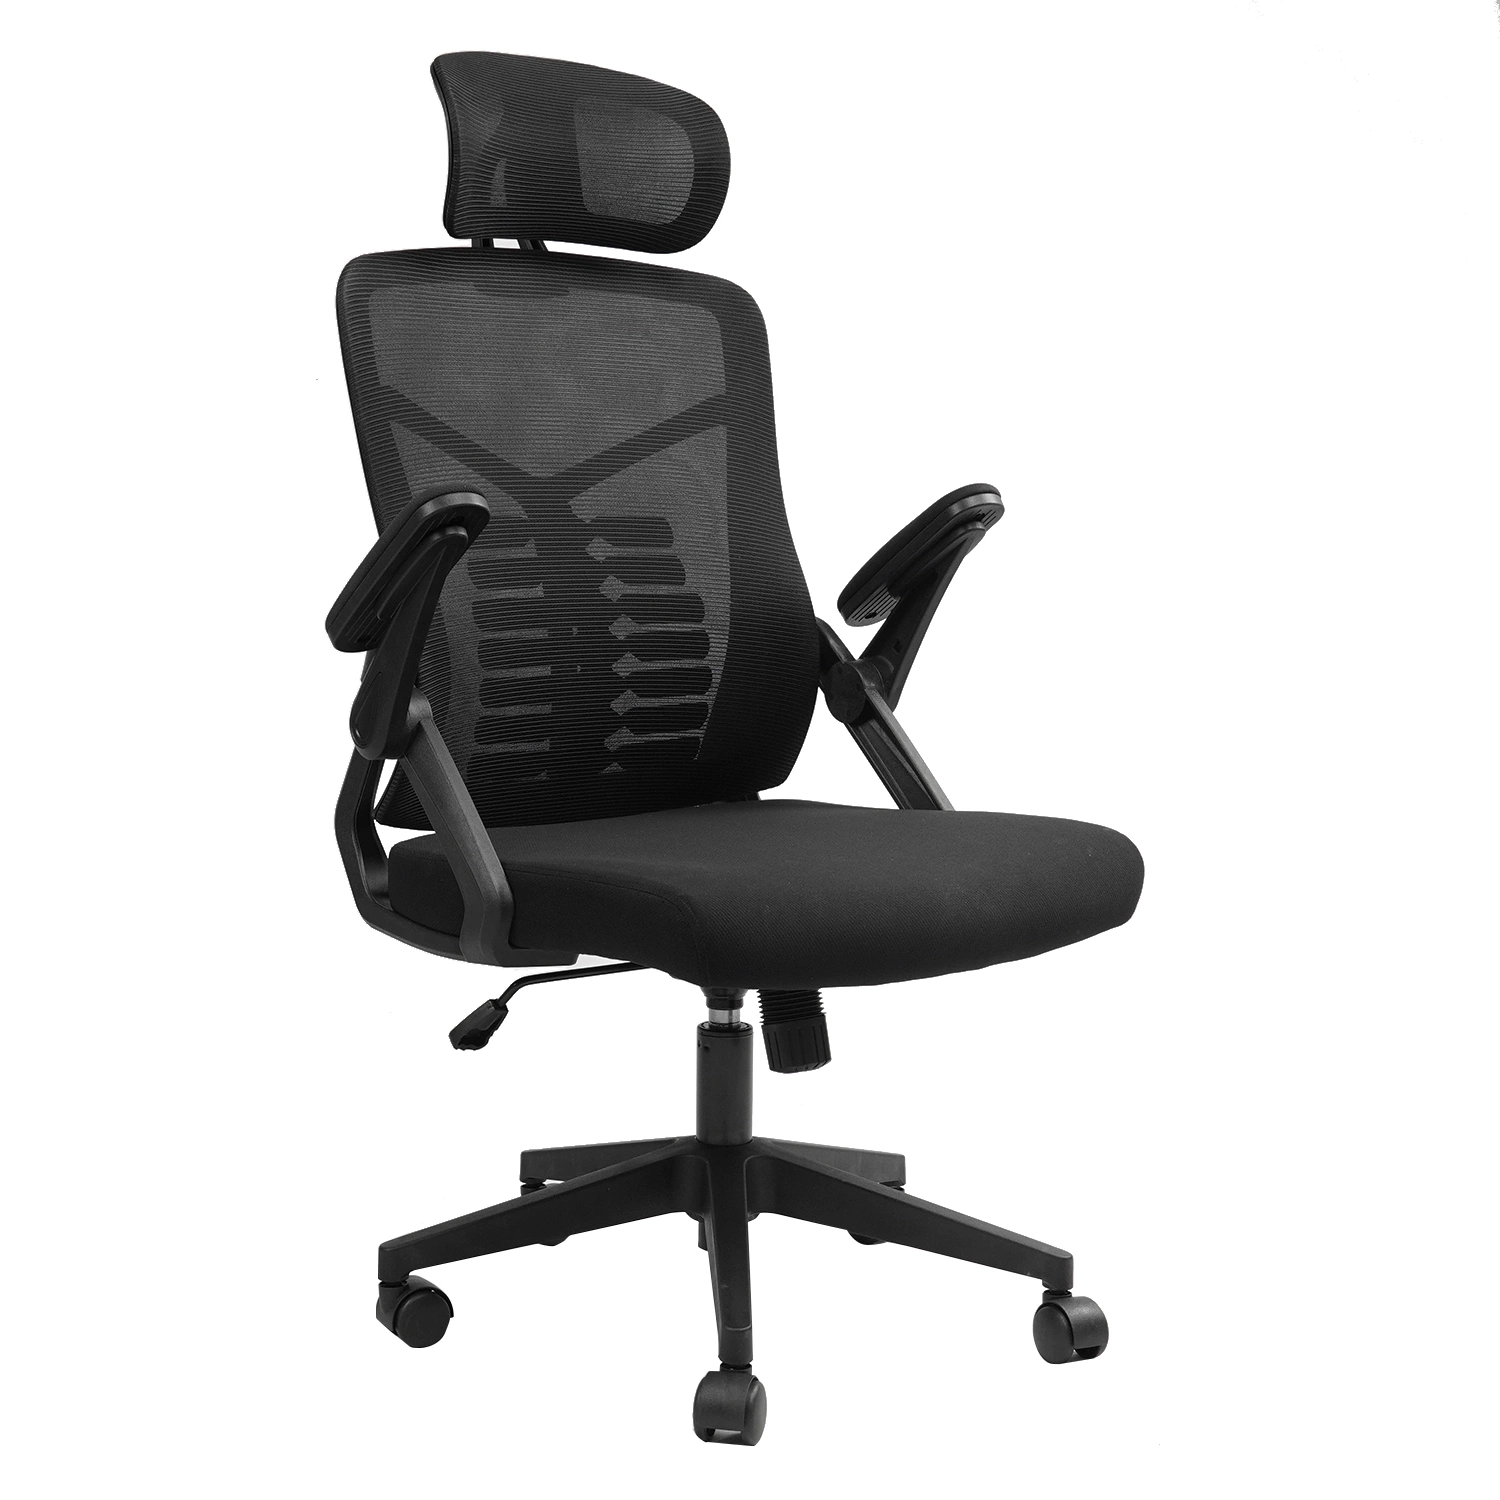 Silla de oficina Mesh, silla de escritorio ergonómica con soporte lumbar ajustable y reposabrazos abatible, asiento amplio Comfort, silla de trabajo para ordenador de respaldo alto